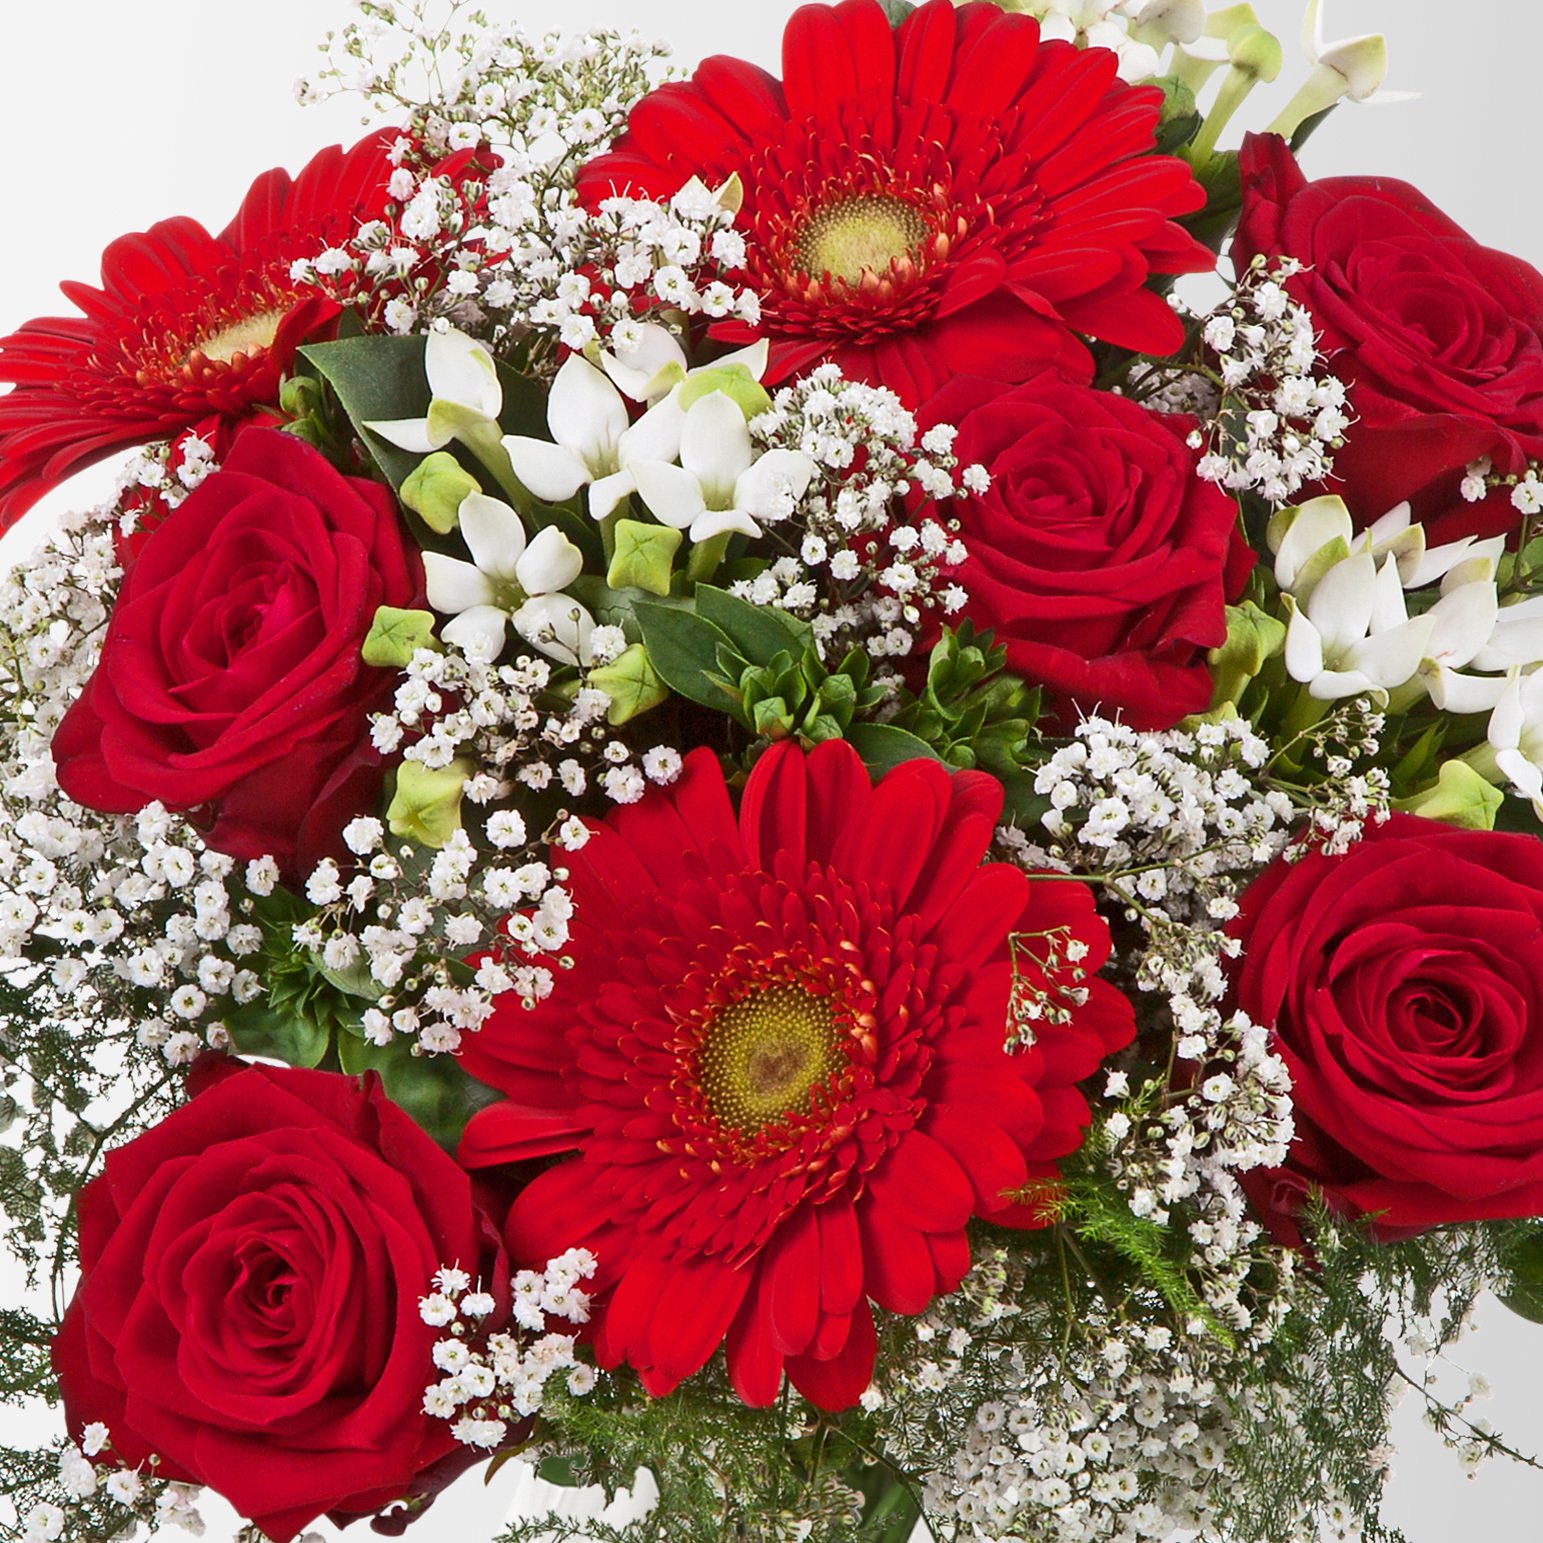 Blumenstrauß 'Liebesüberraschung' inkl. gratis Grußkarte